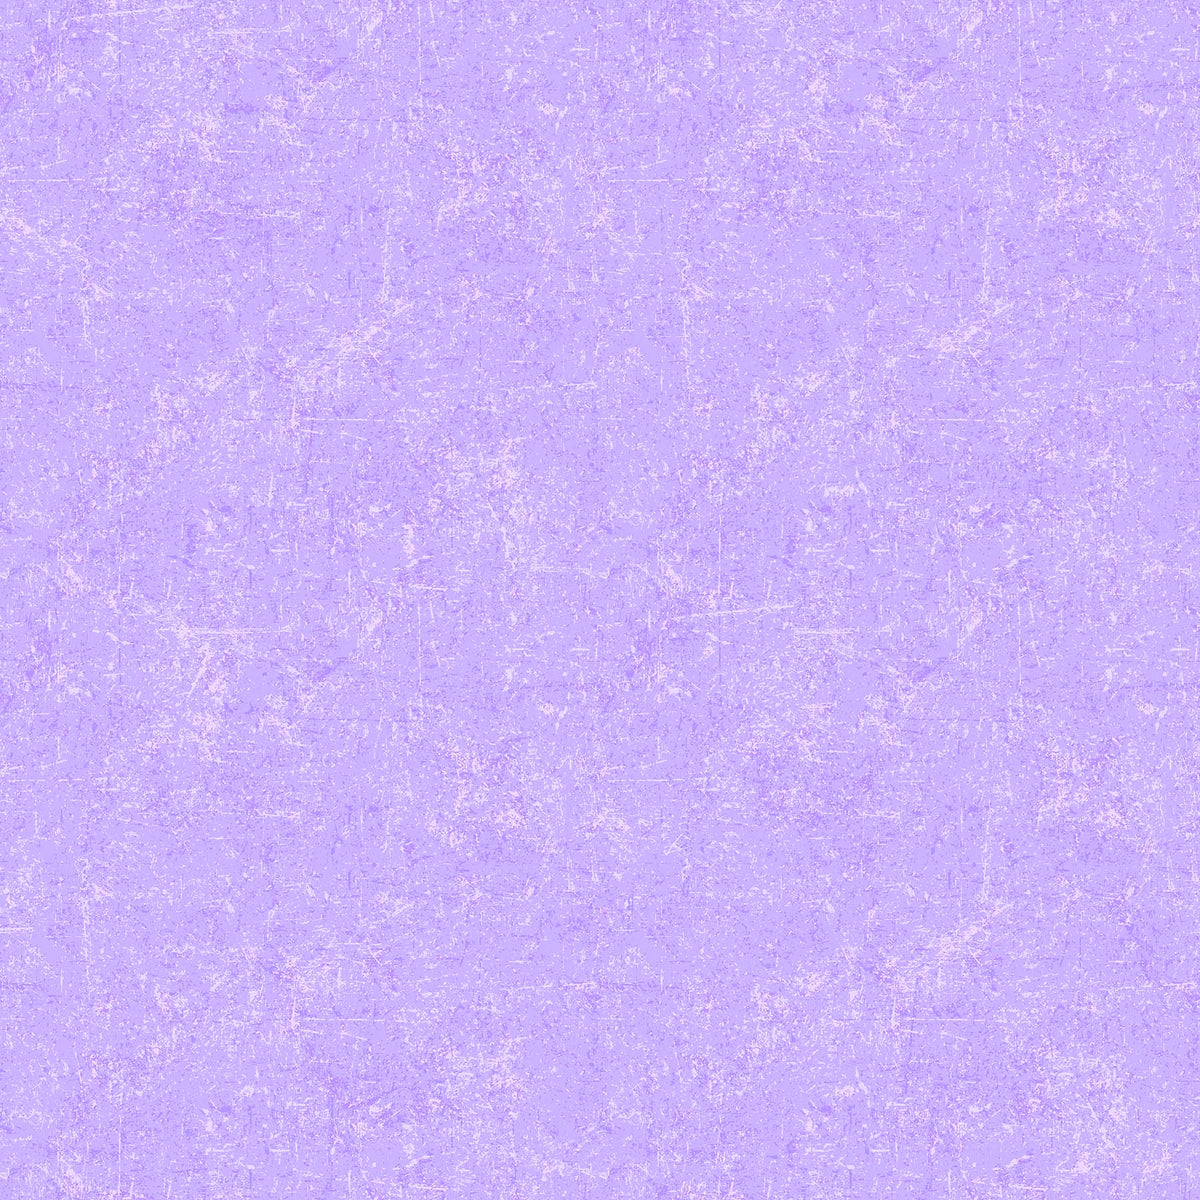 Glisten Sorbet Quilt Fabric - Blender in Grape Light Purple - P10091-80